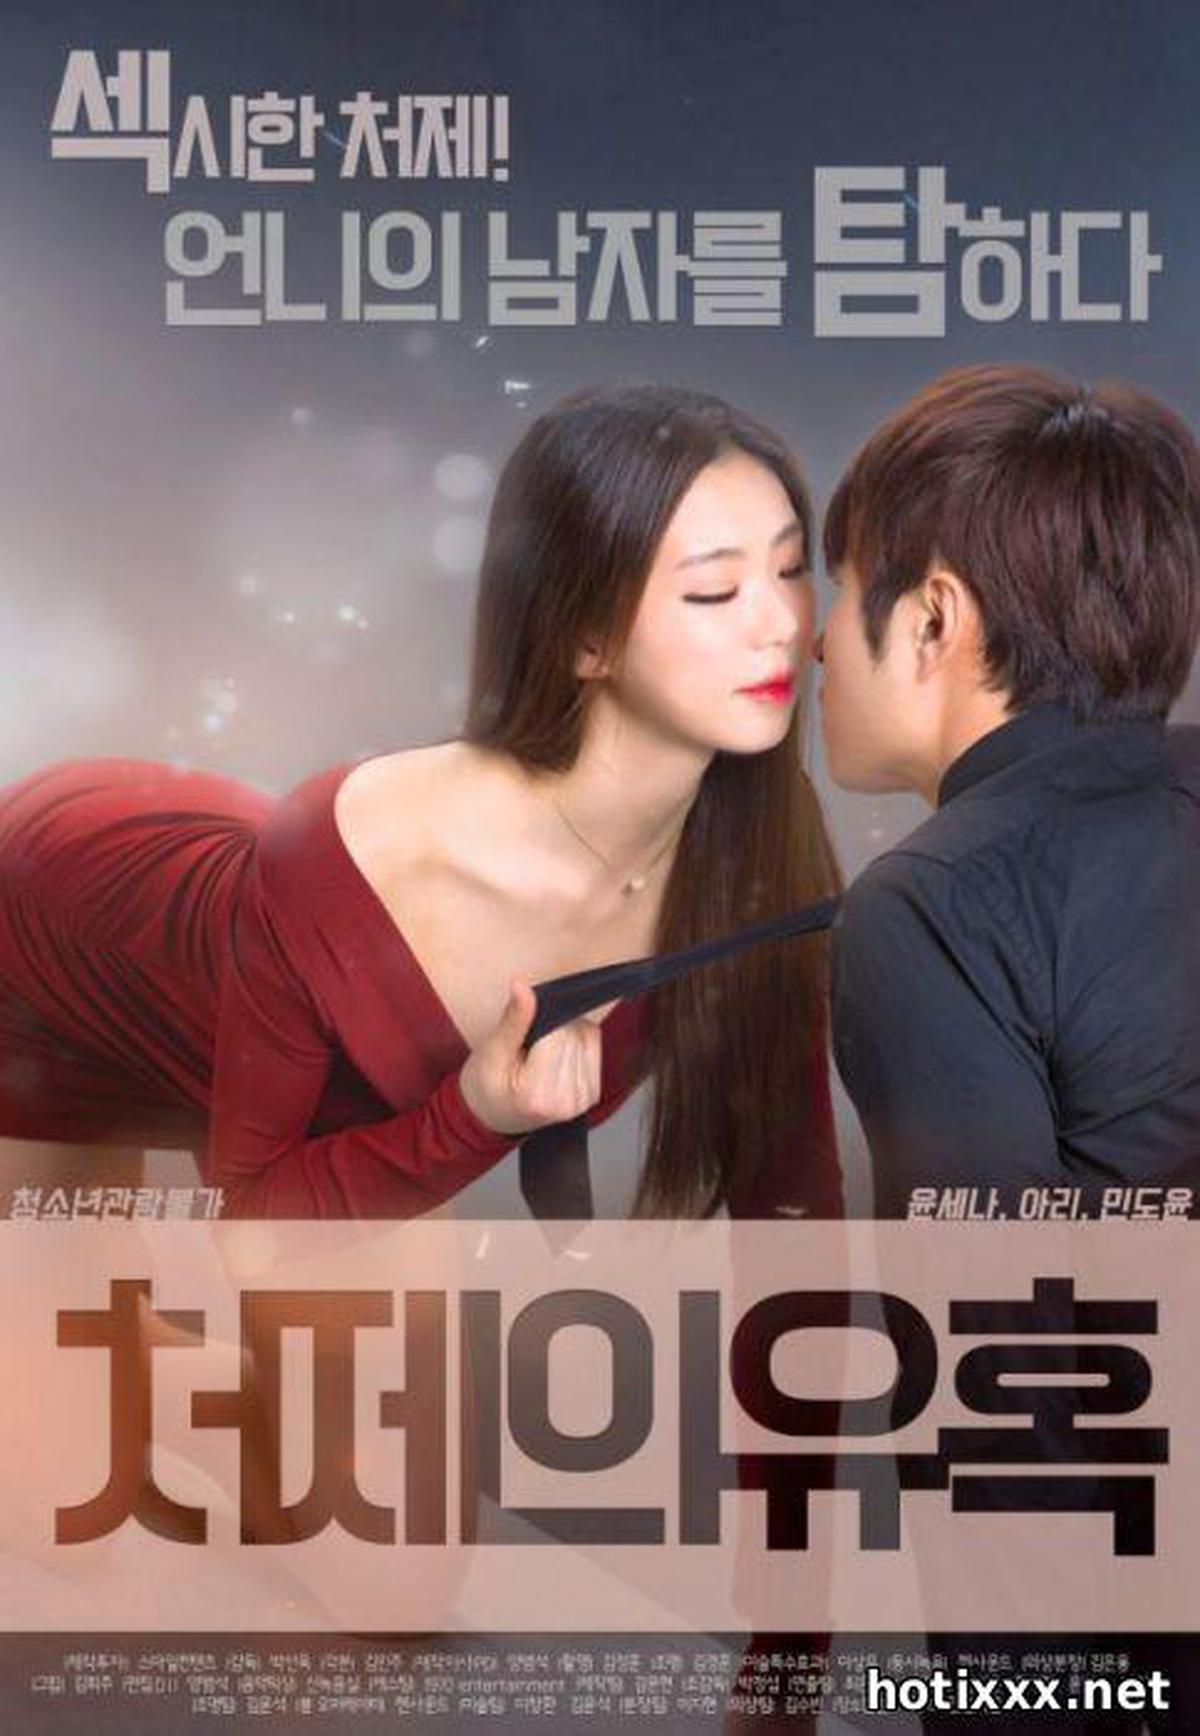 처제의유혹 / cheo-je-eui-yu-hok / Sister-in-law’s seduction (2017)